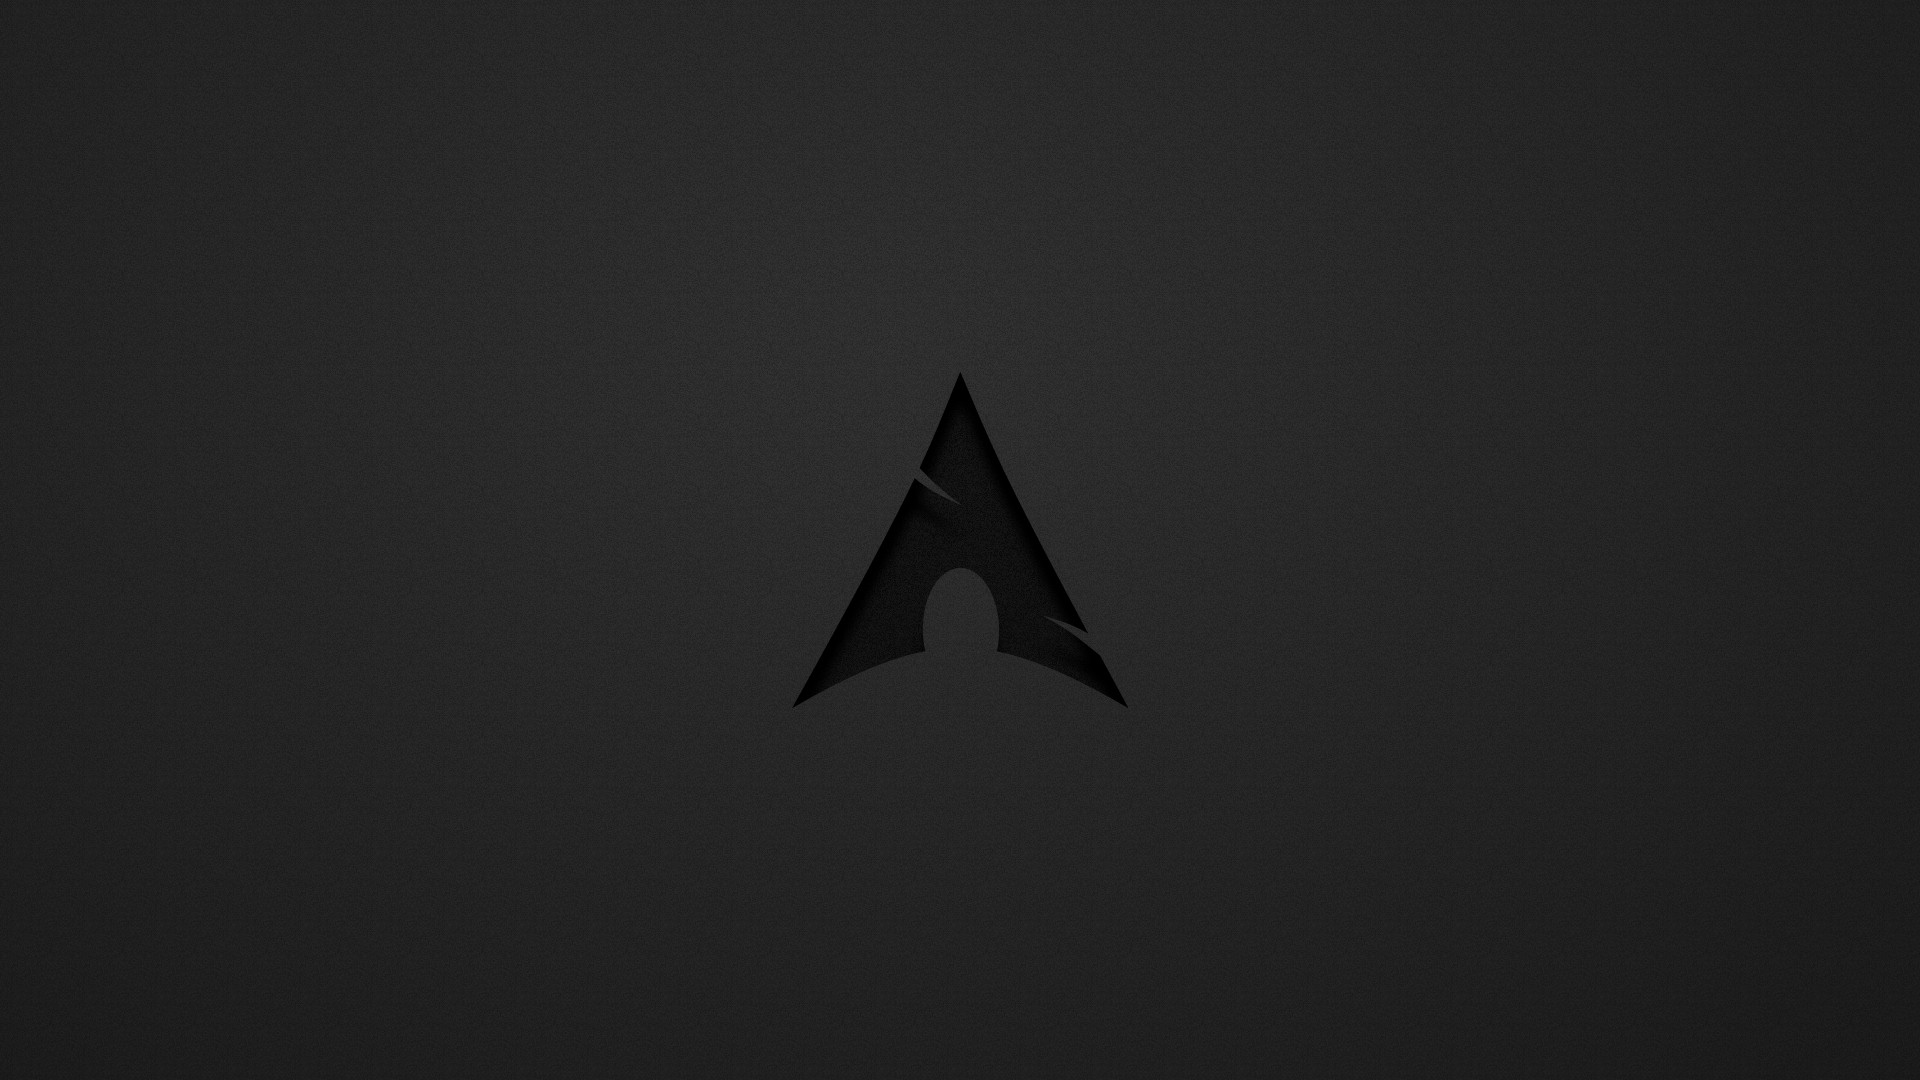 arch linux wallpaper hd,nero,triangolo,buio,cielo,bianco e nero